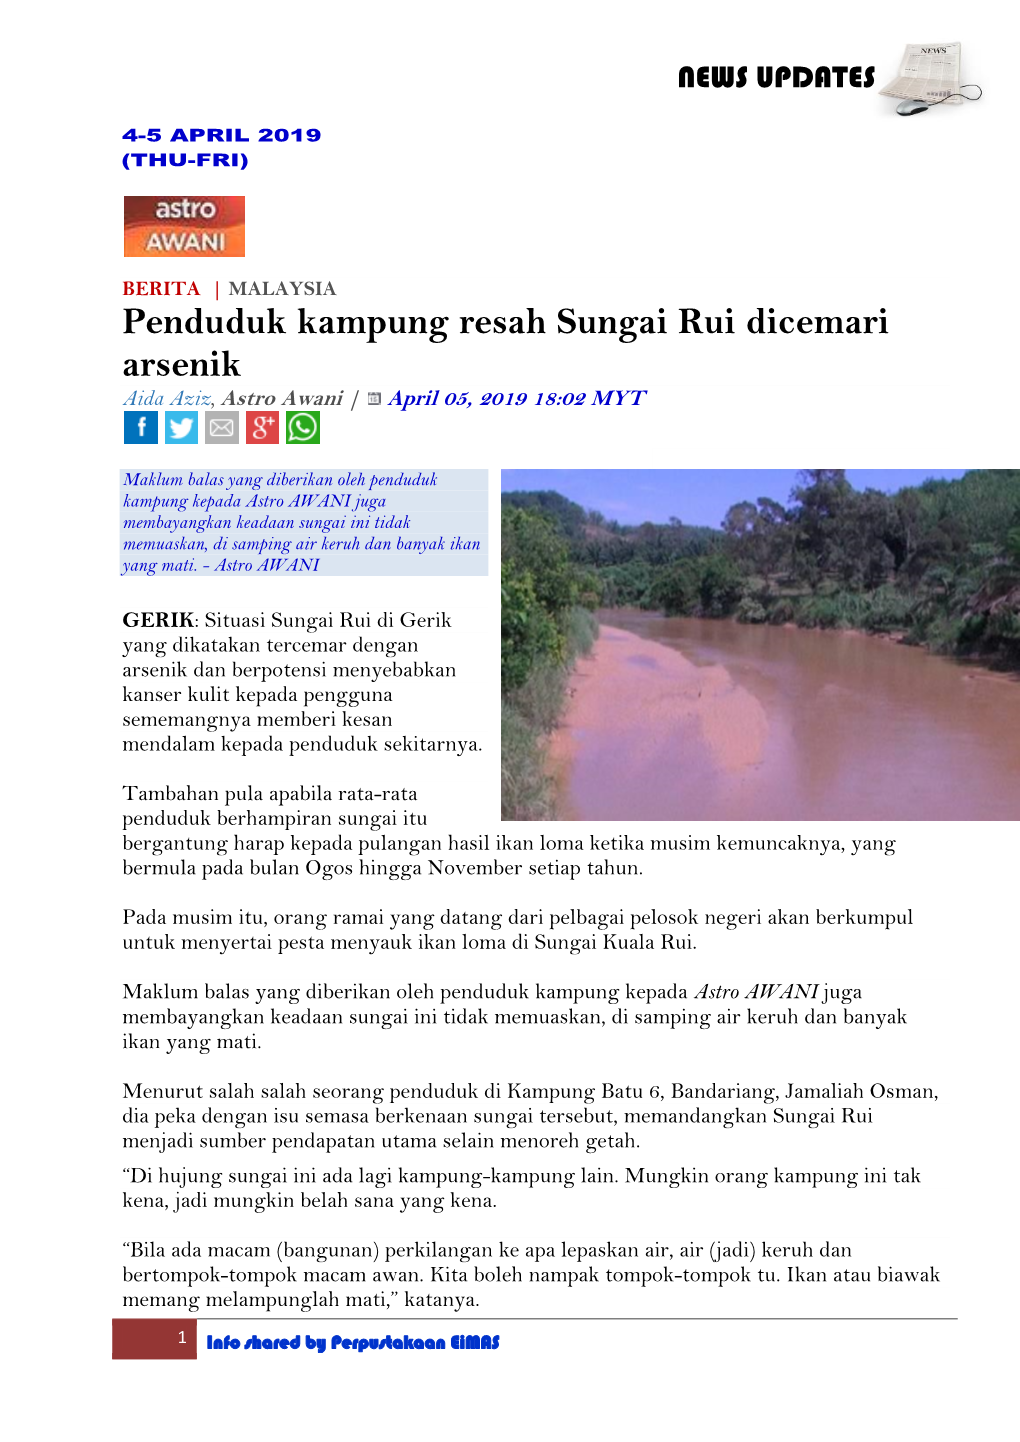 Penduduk Kampung Resah Sungai Rui Dicemari Arsenik Aida Aziz, Astro Awani | April 05, 2019 18:02 MYT